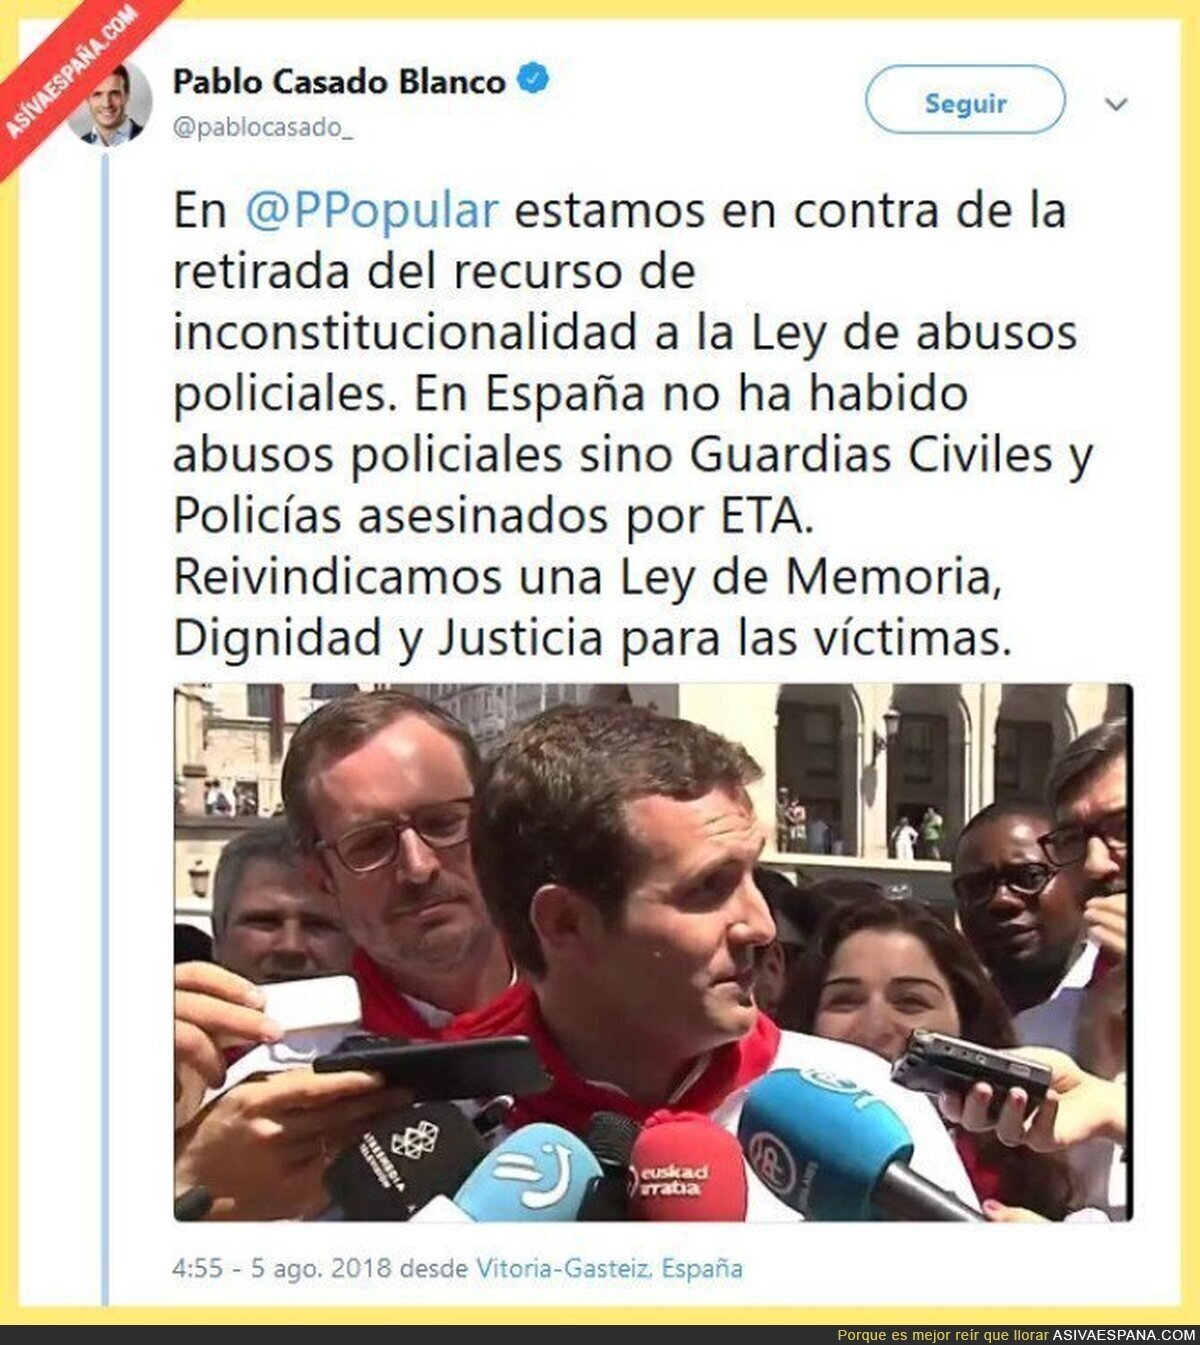 "En España no ha habido abusos policiales"